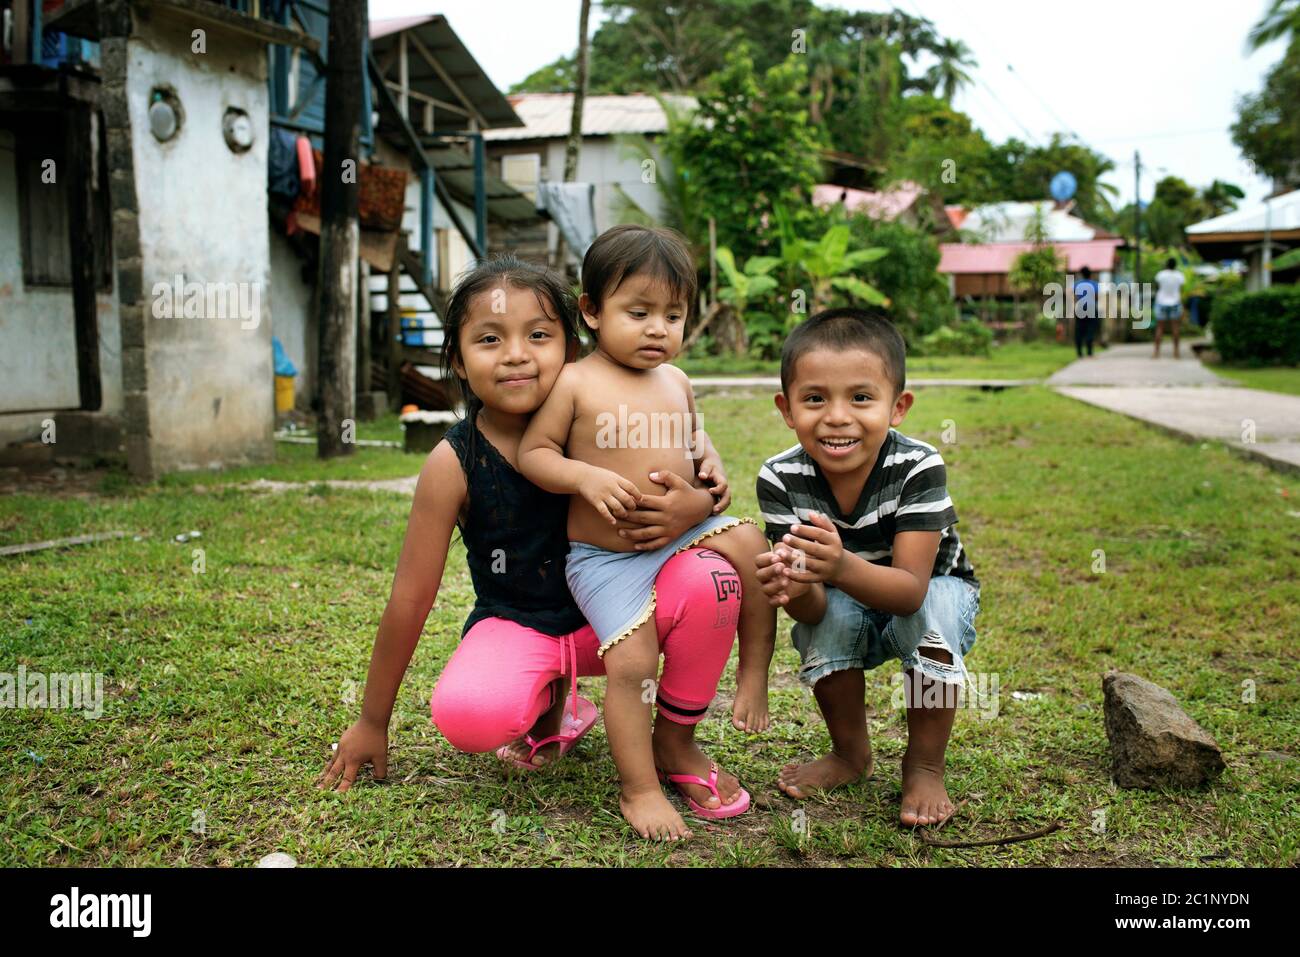 Autentico stile di vita caraibico rilassato con bambini felici che giocano vicino al marciapiede a Isla Bastimentos, provincia di Bocas del Toro, Panama. Ott 2018 Foto Stock